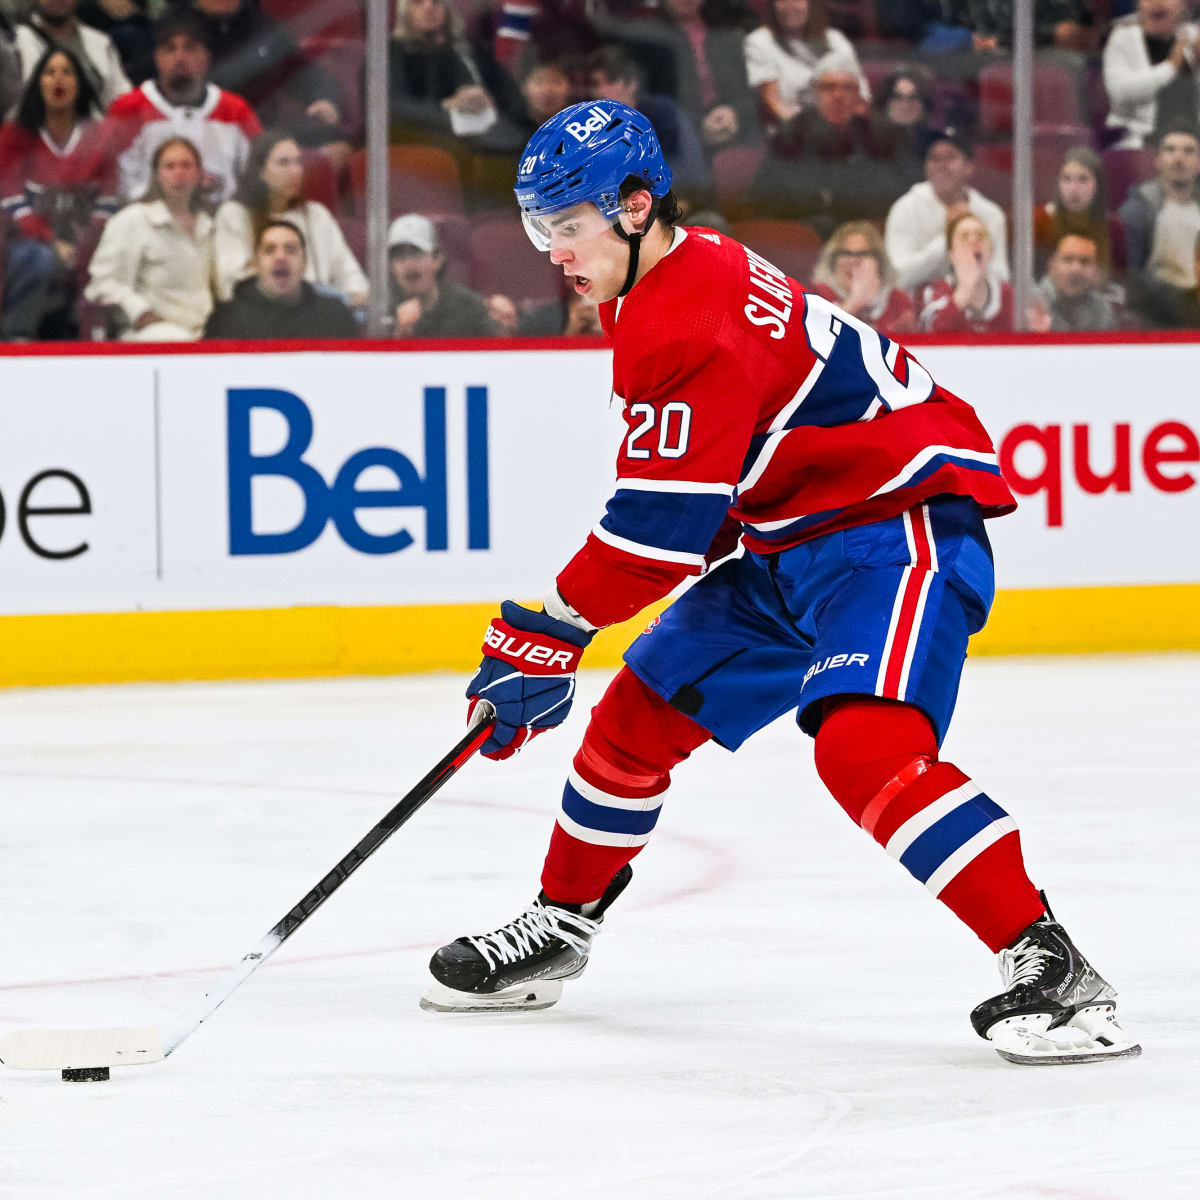 Canadiens take Juraj Slafkovsky with top pick in NHL draft